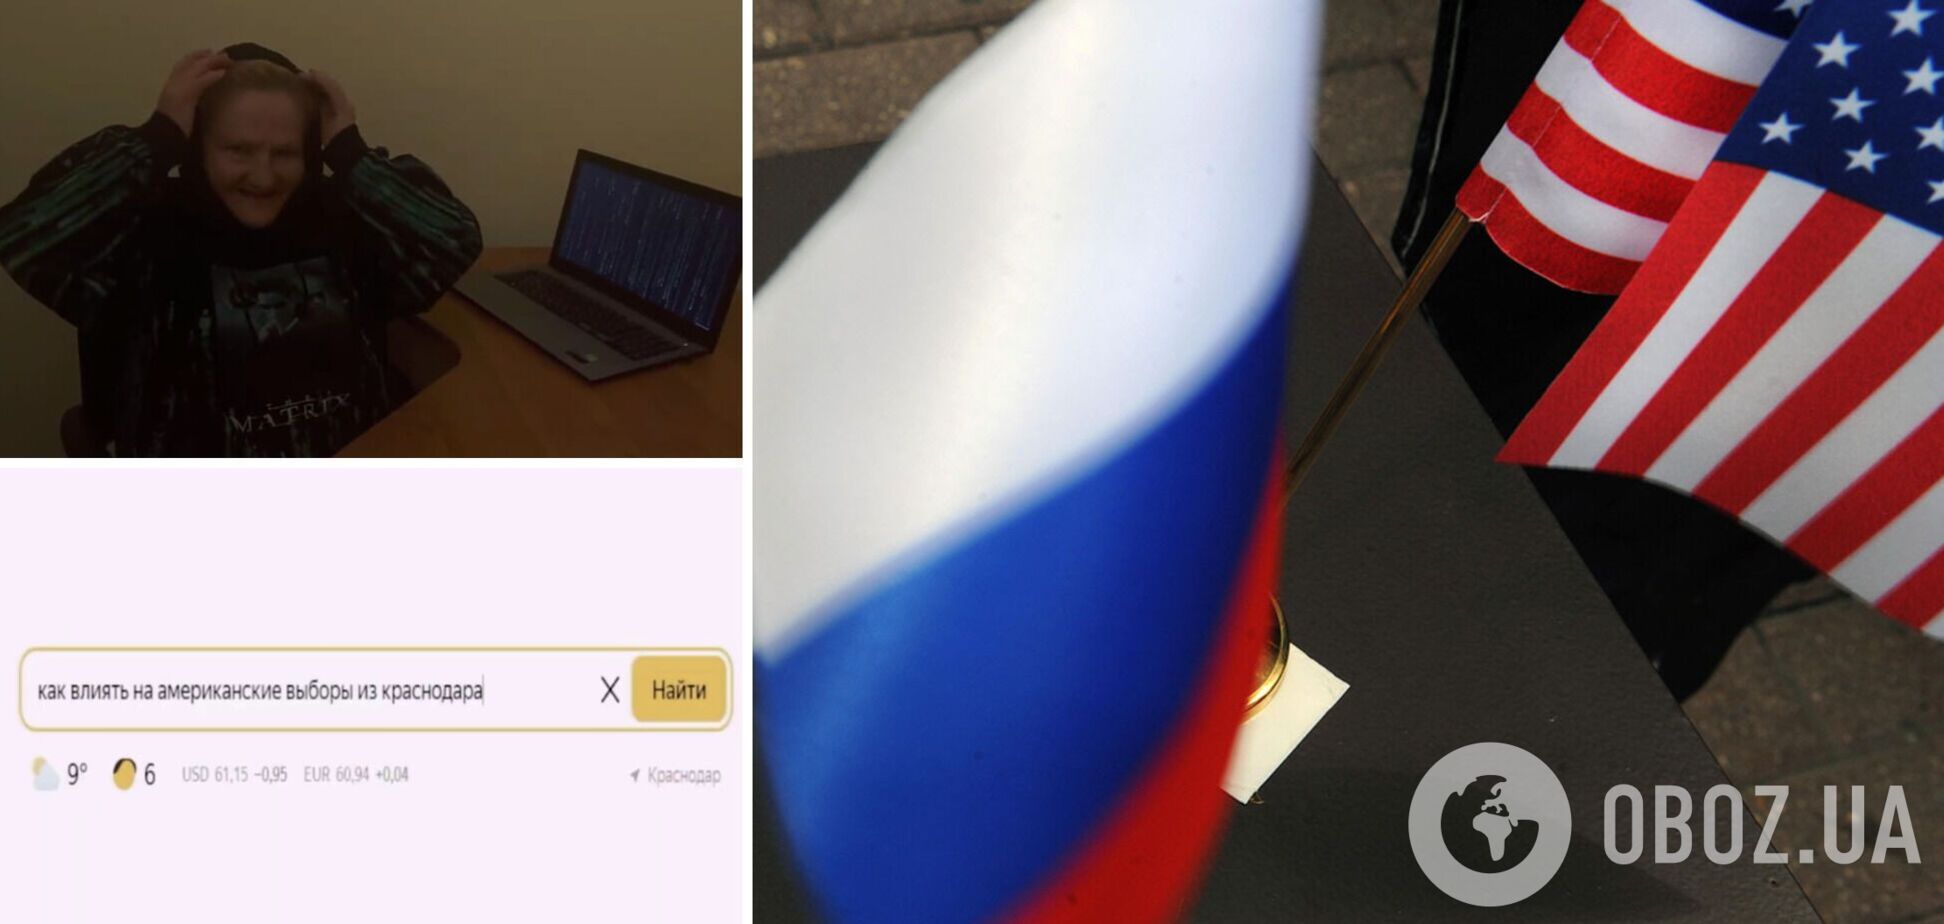 'Санитаров немедленно': в сети подняли на смех ролик 'отрядов Путина' о 'влиянии на выборы в США из Краснодара'. Видео